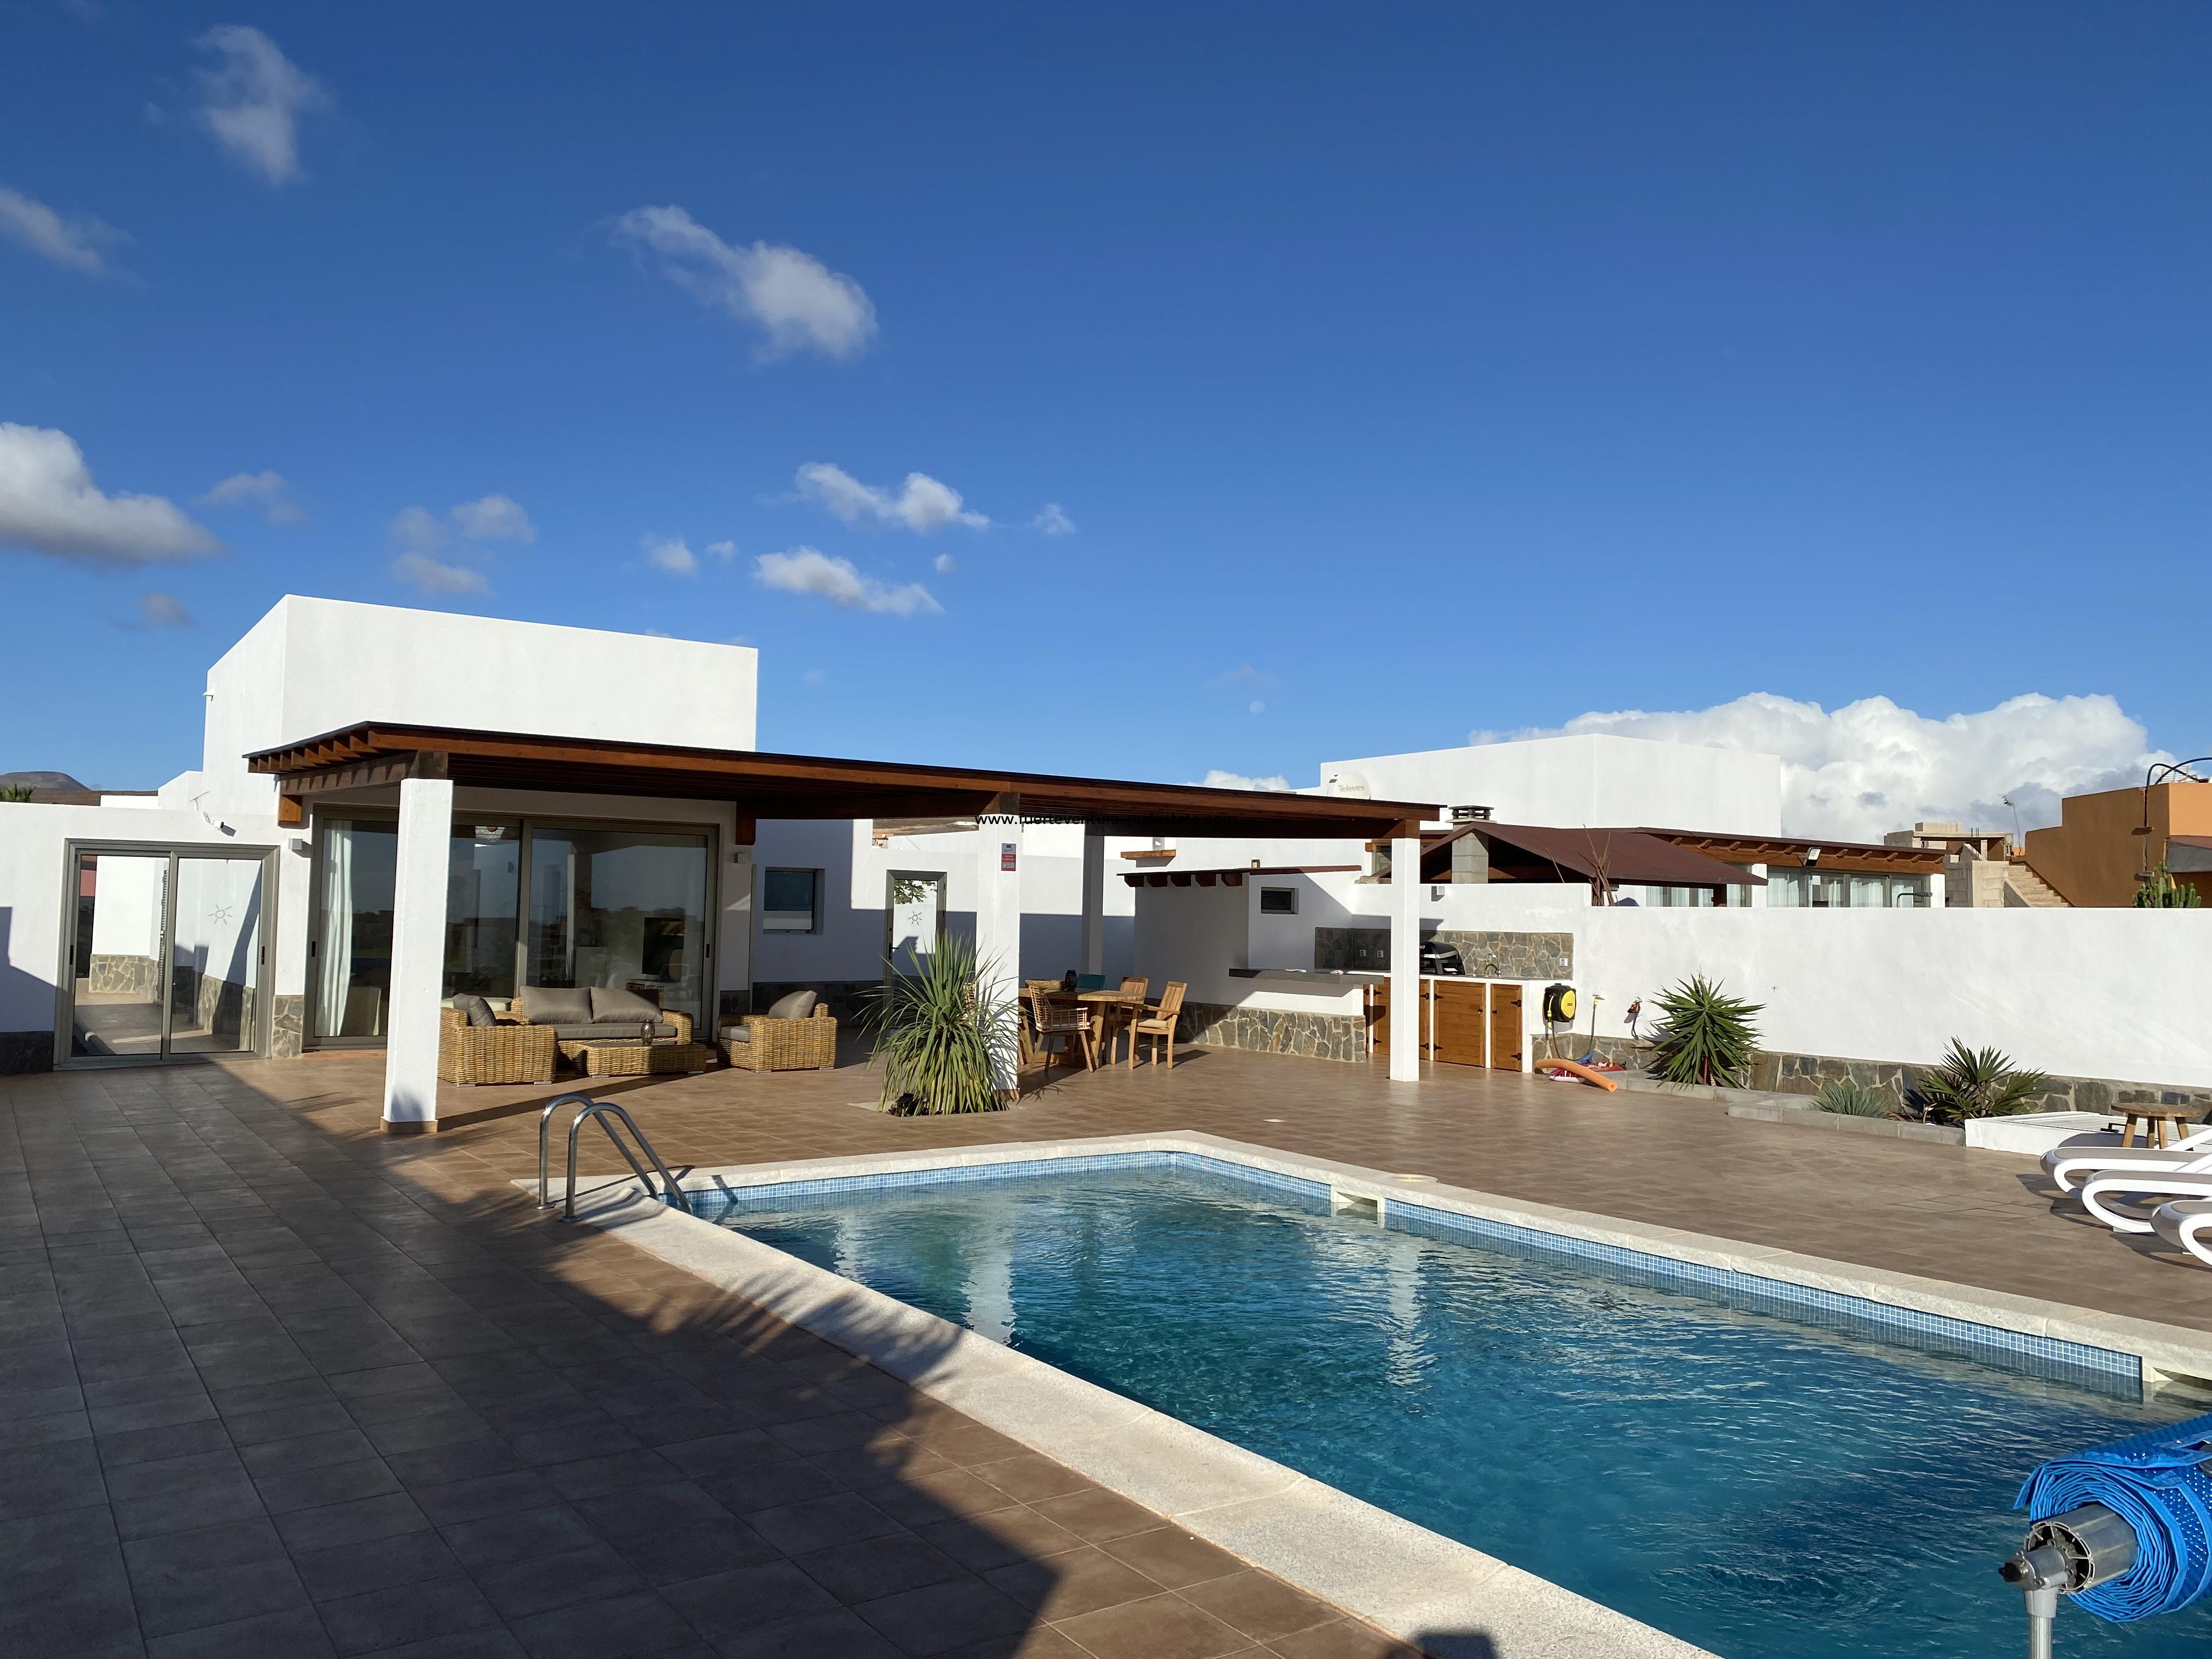 ¡En venta! Una villa muy bonita con piscina en el campo de golf con vistas despejadas al mar.